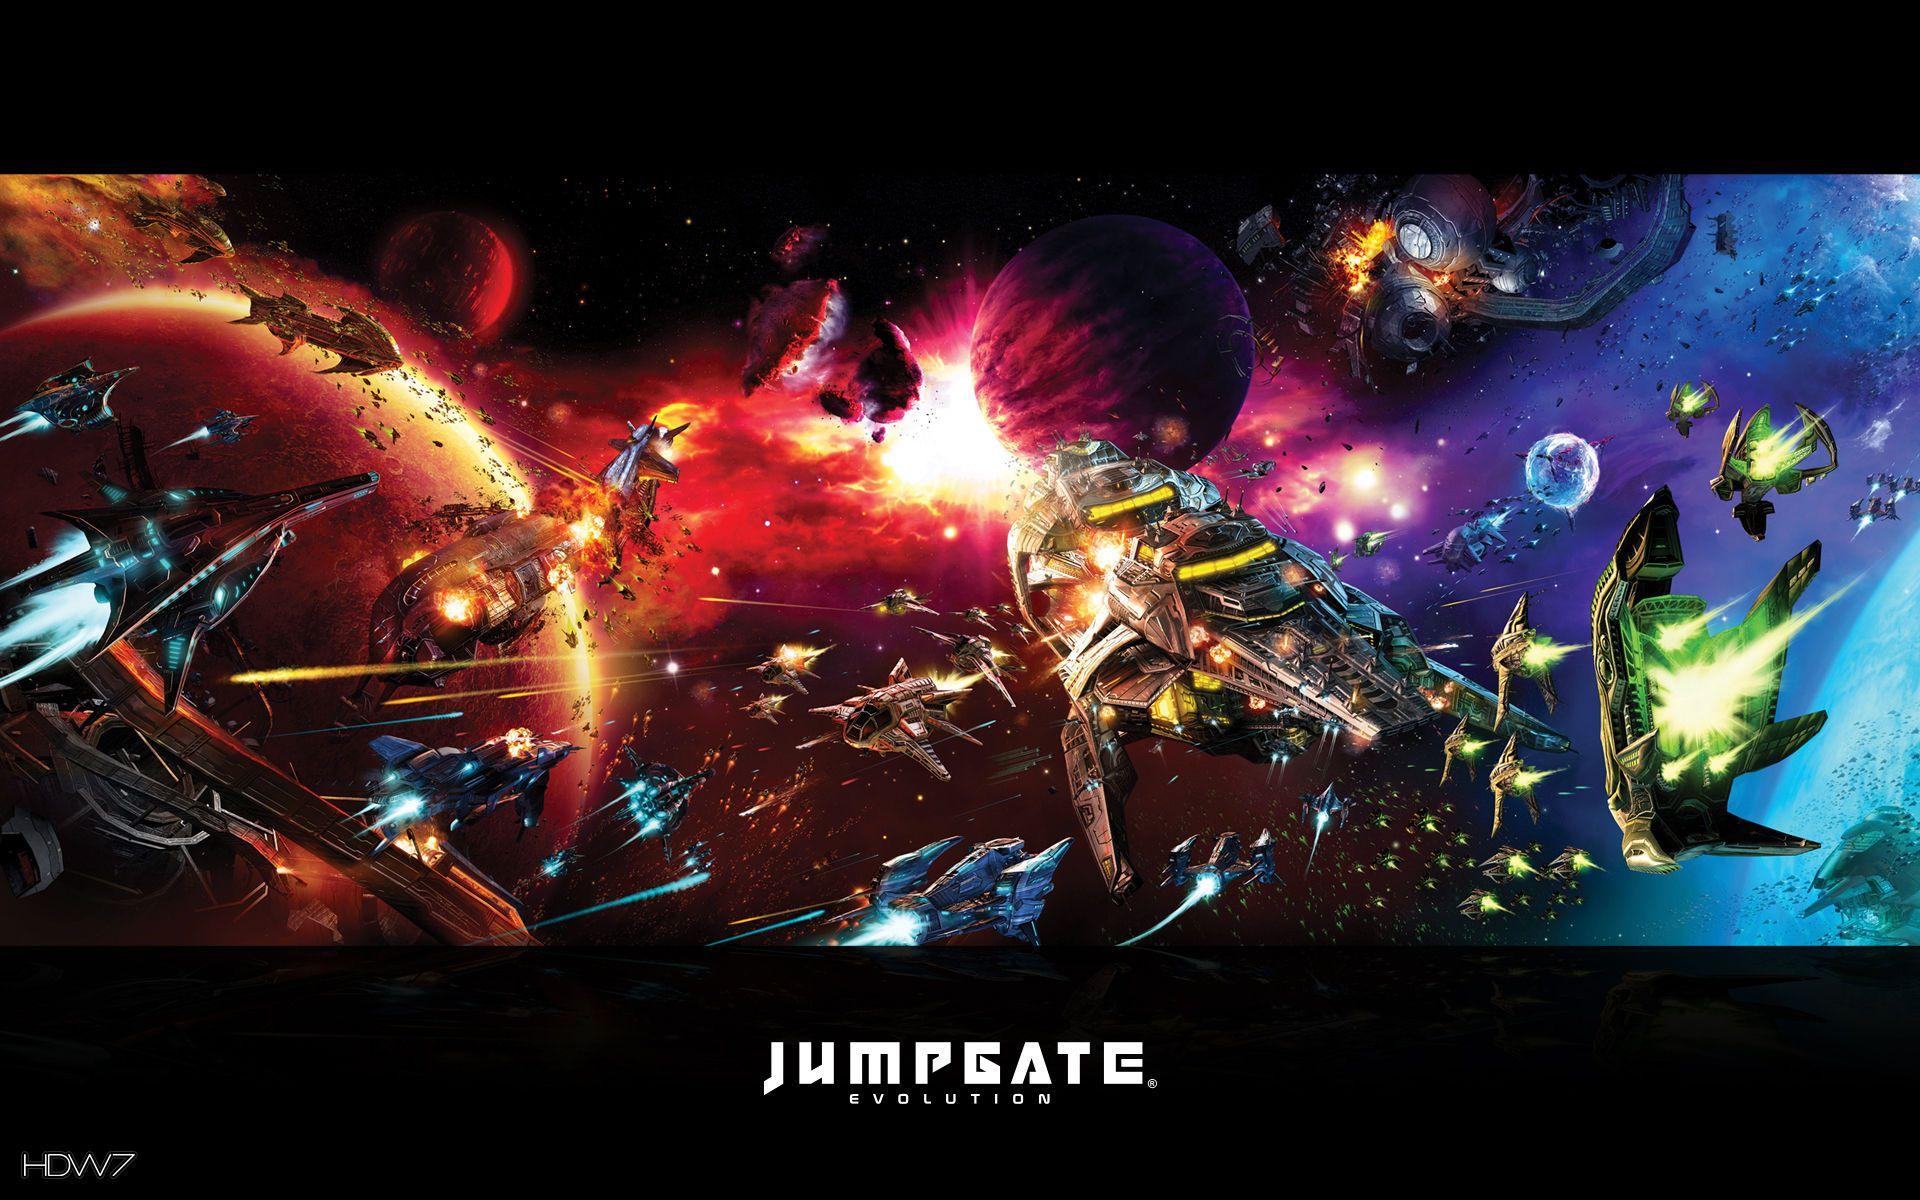 jumpgate evolution epic space combat widescreen wallpaper. HD